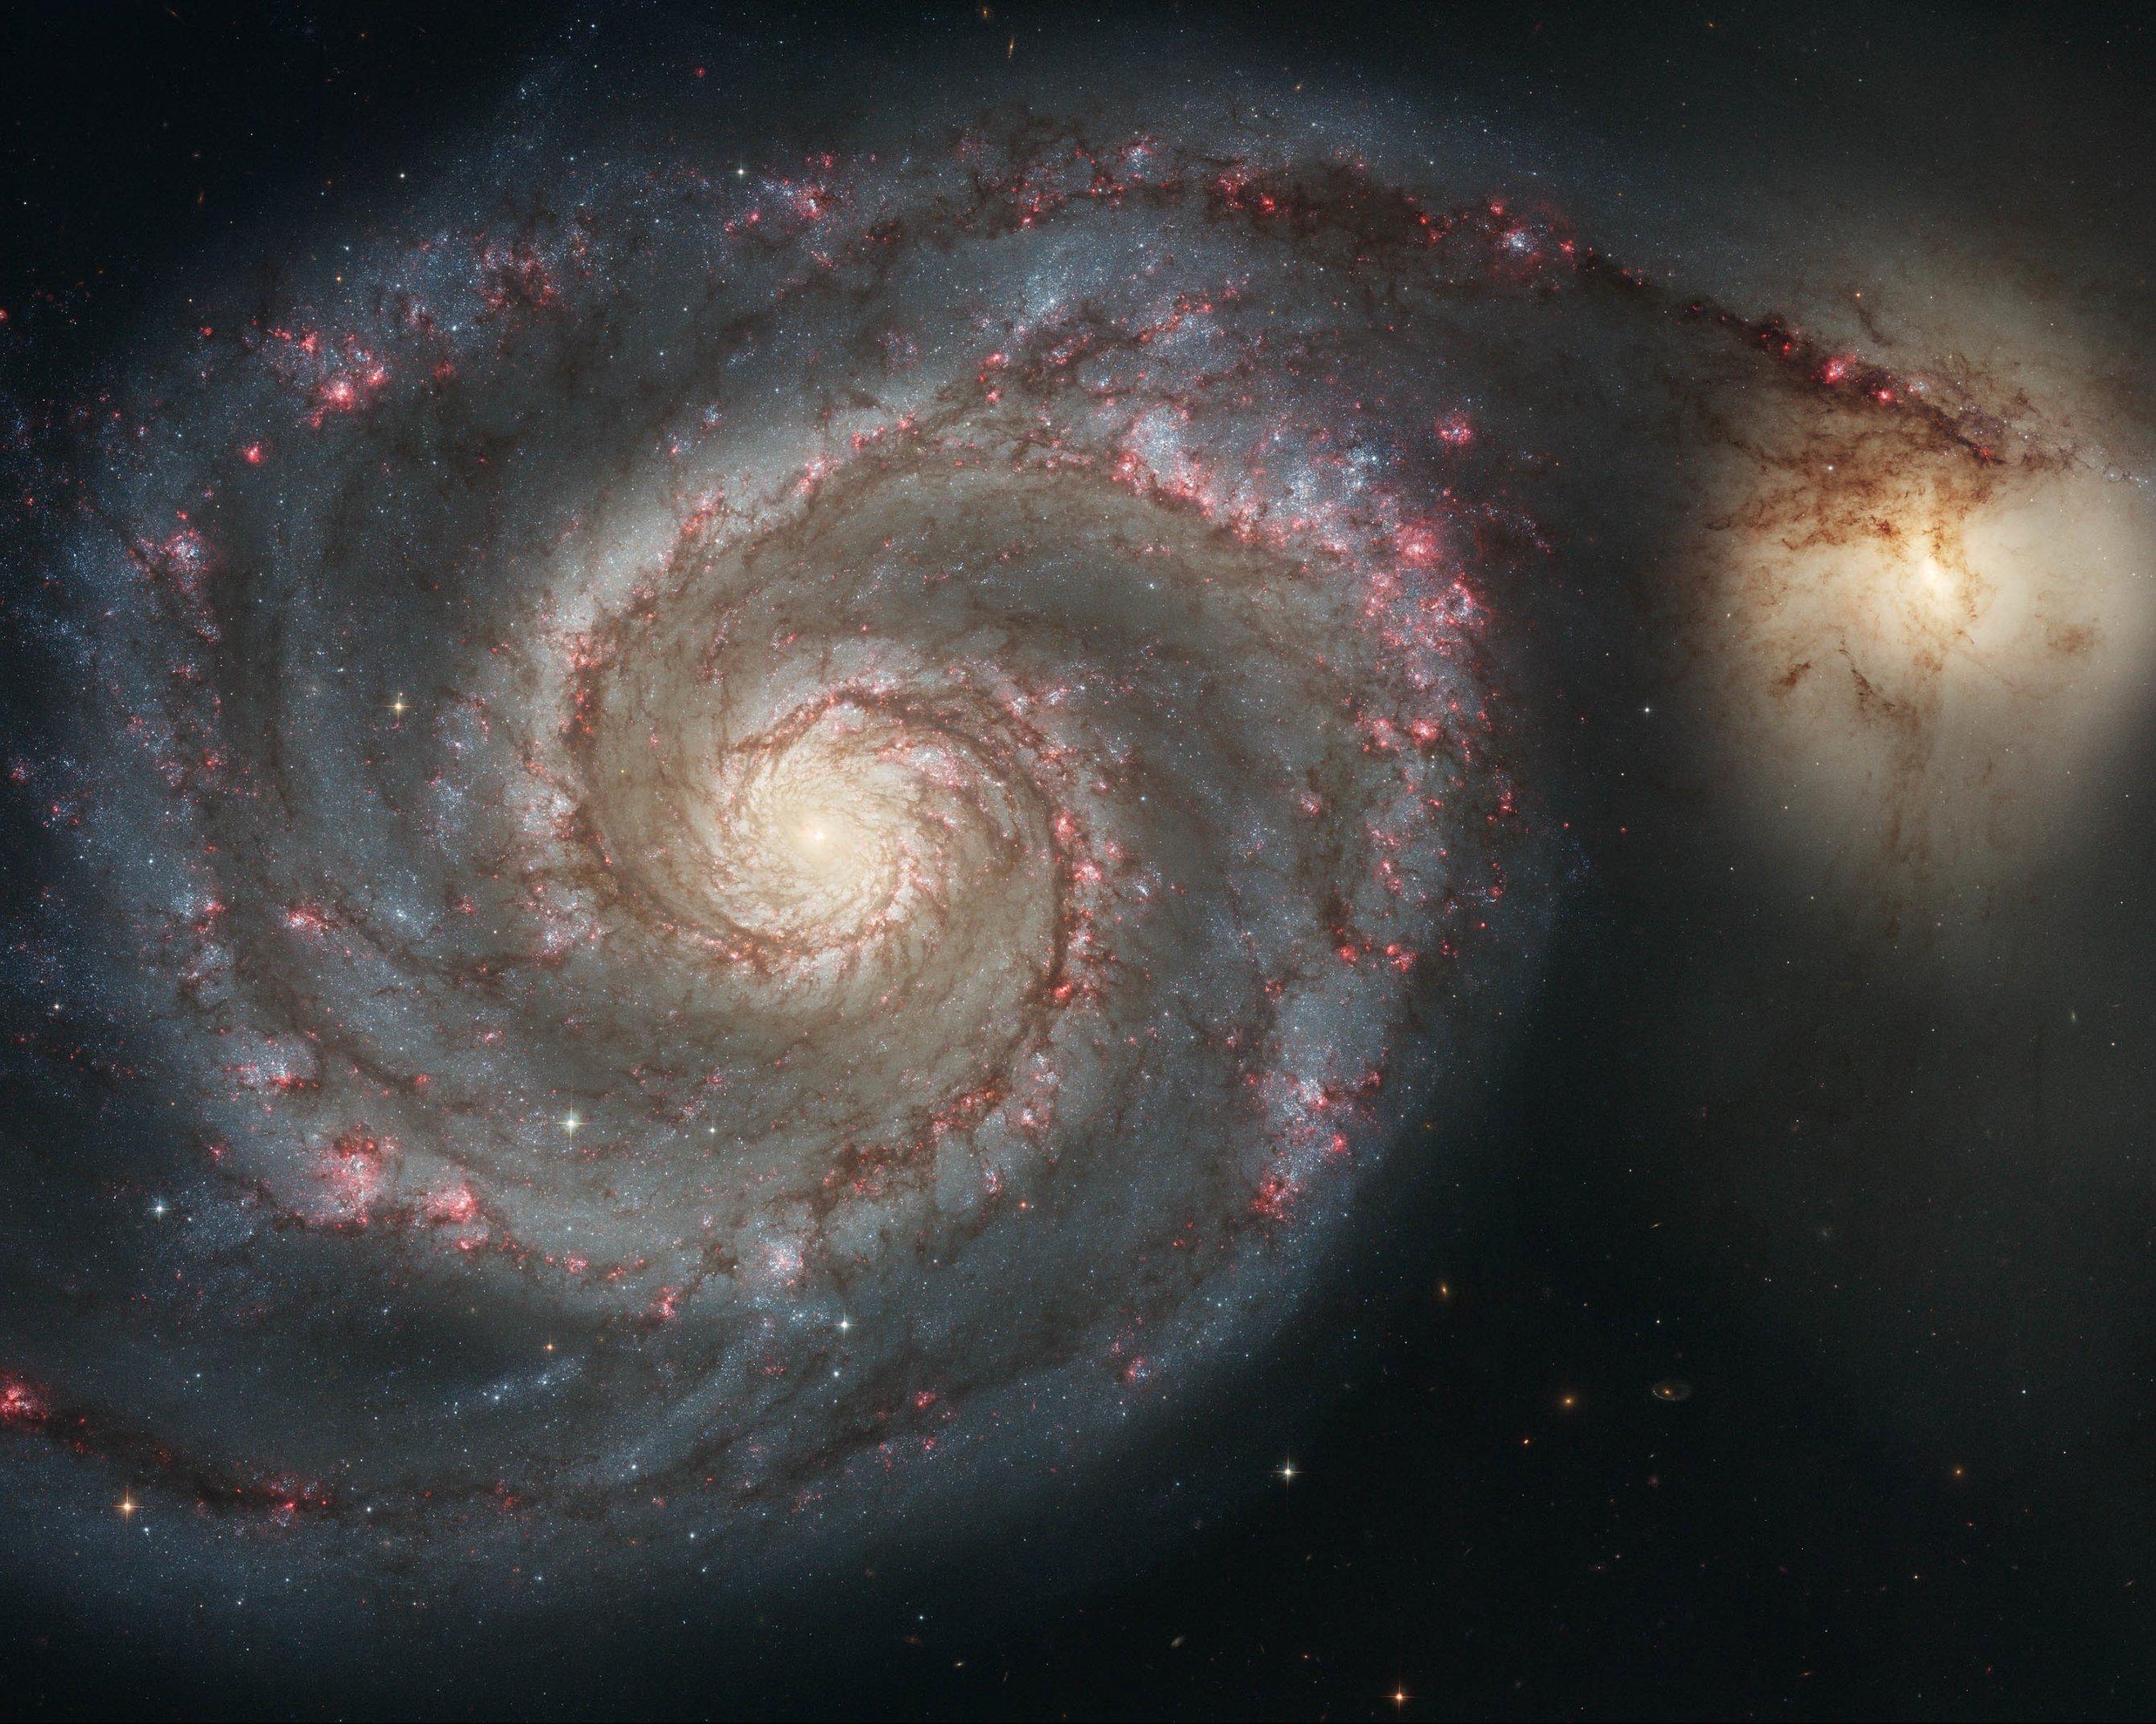 Bild der Spirallgalaxie M51